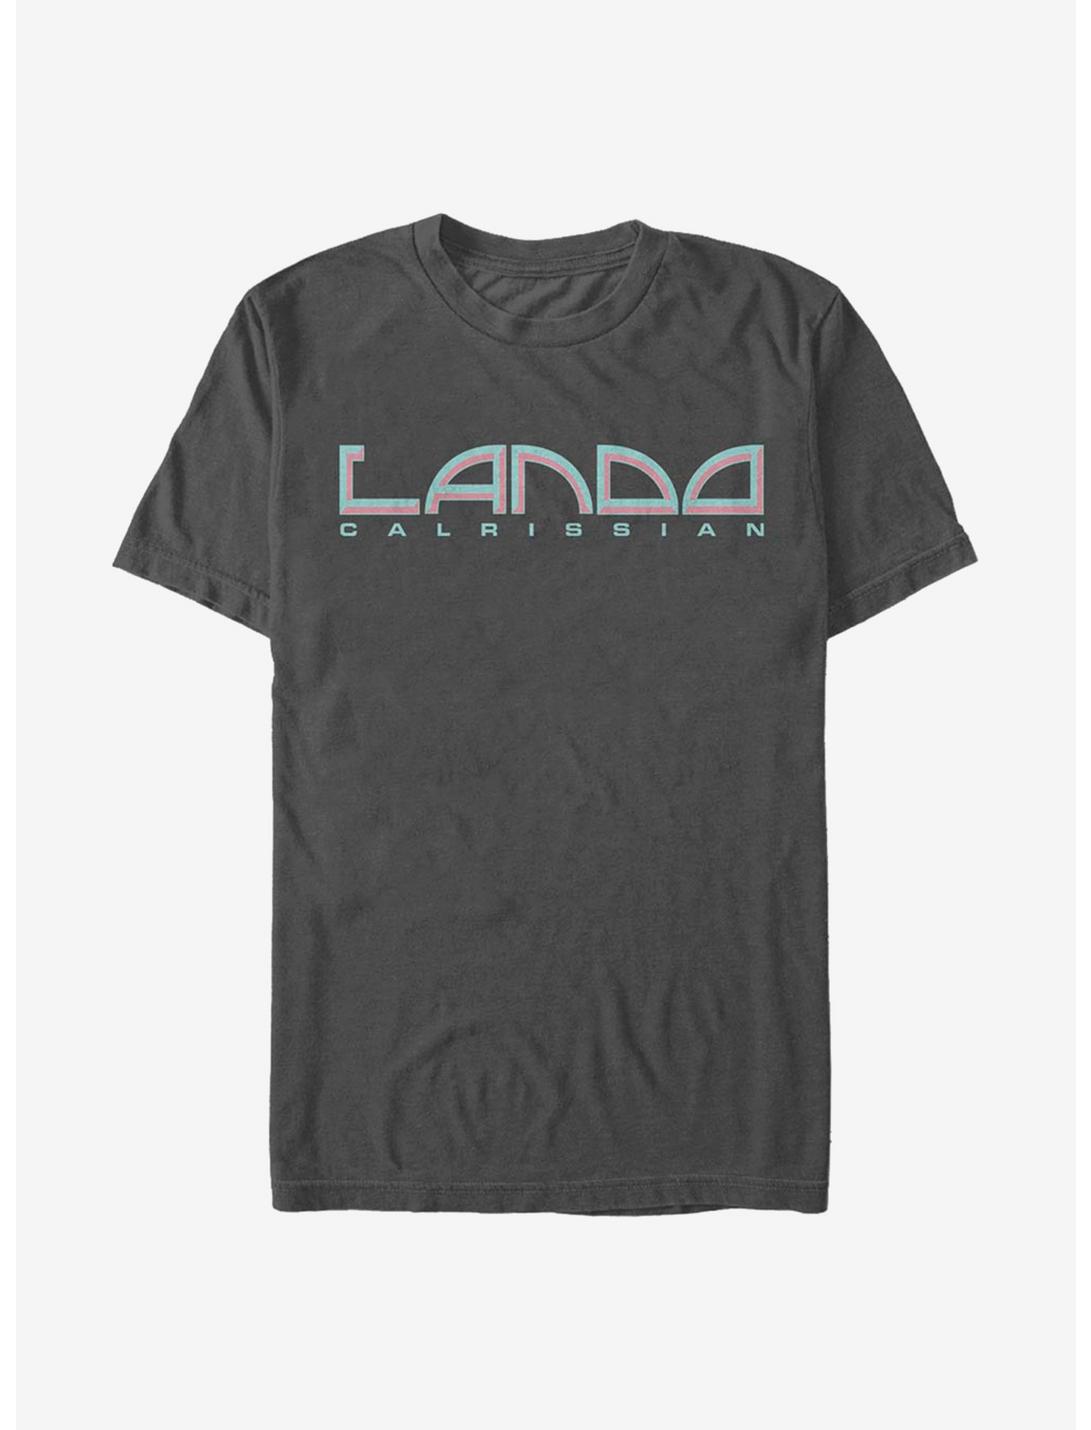 Star Wars Lando Calrissian T-Shirt, CHARCOAL, hi-res